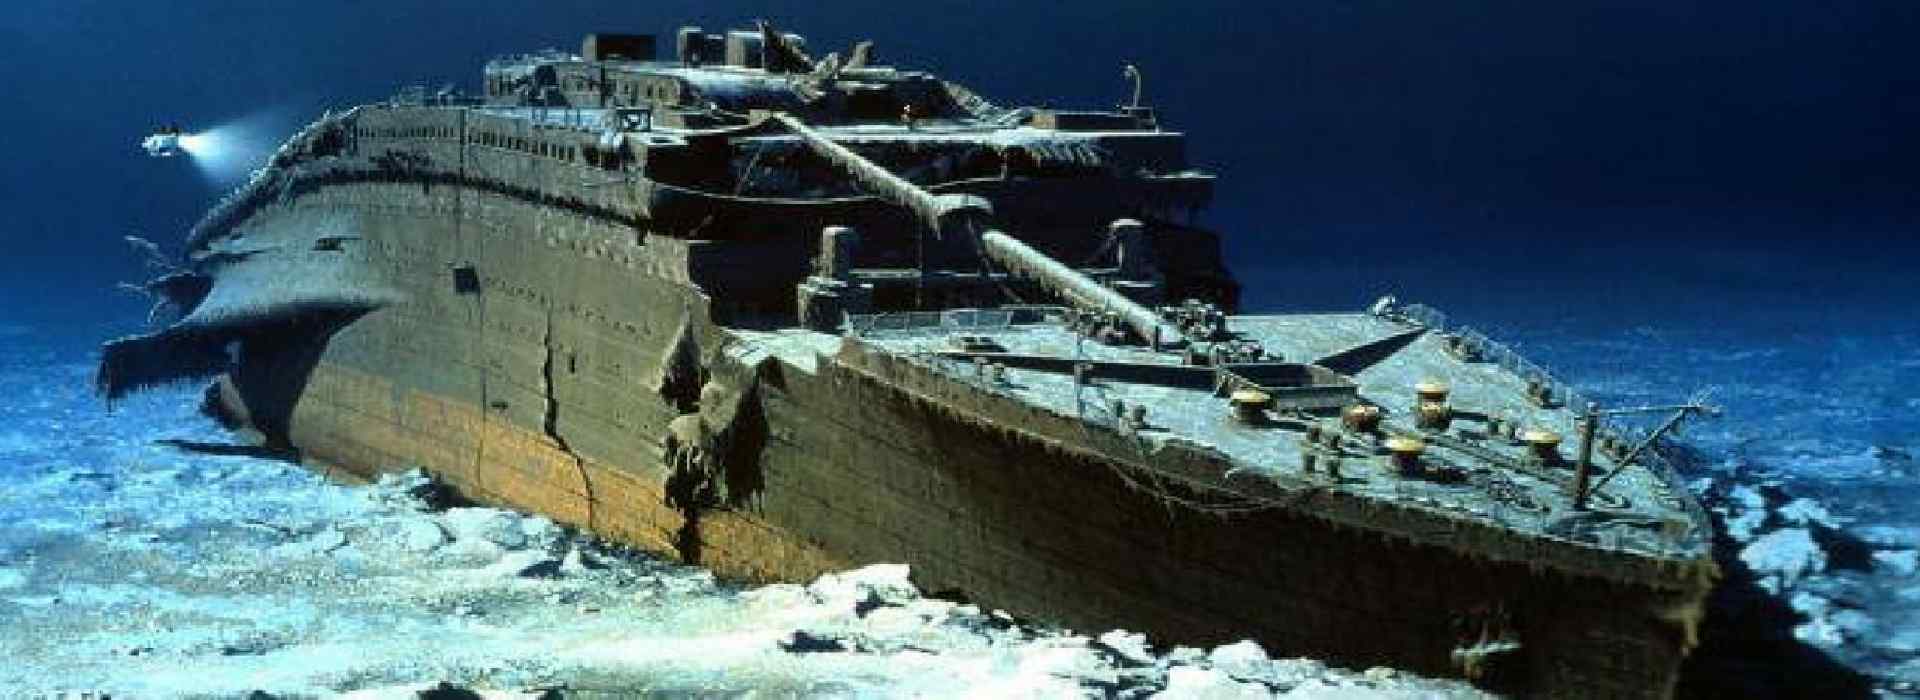 Titanic Italia: per evitare che affondi occorre correggere il paradigma